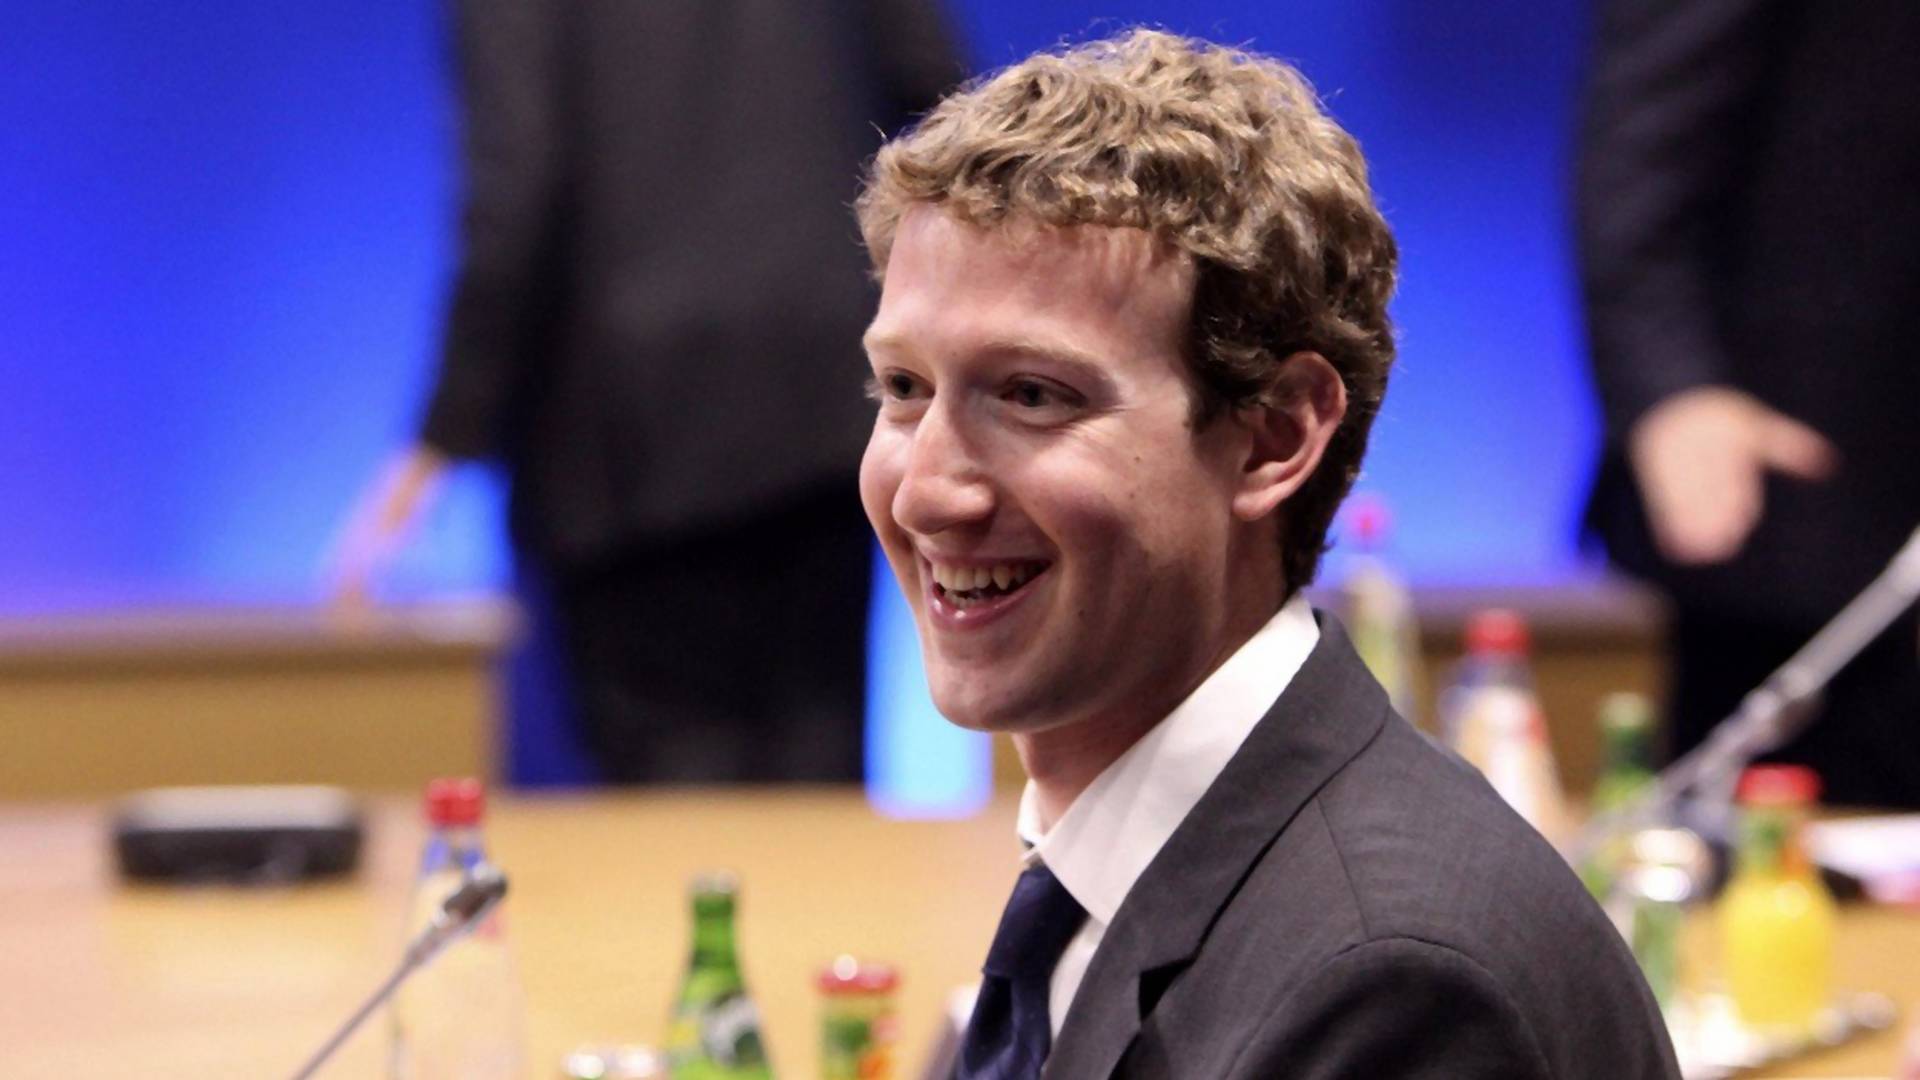 U Facebooku su zabrinuti zbog odluka Marka Zakerberga